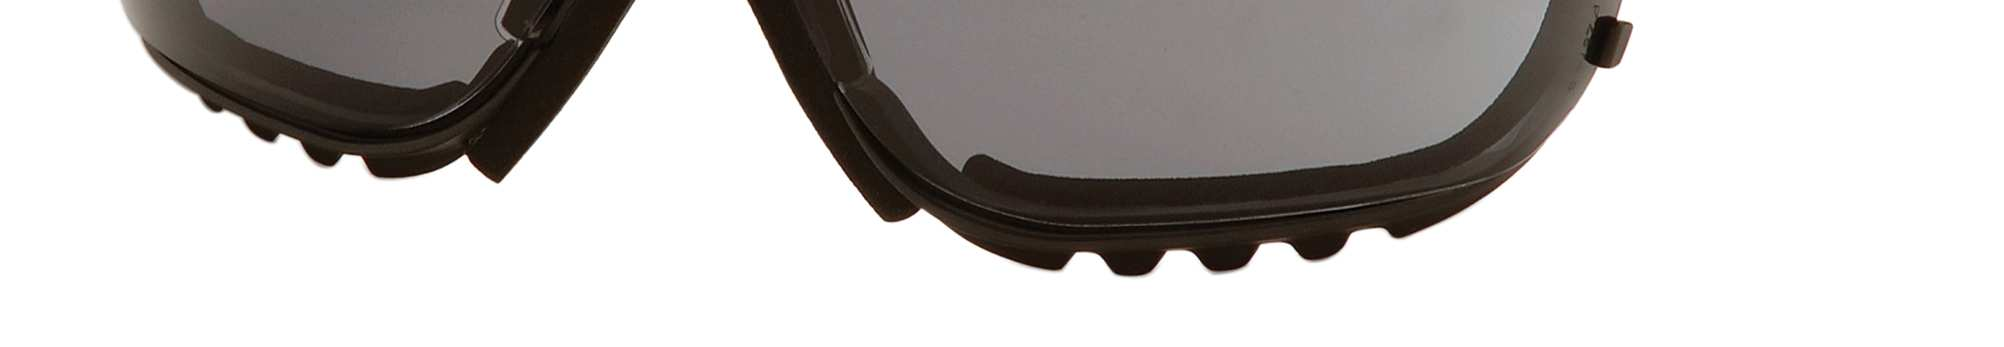 Las lentes proporcionan una protección del 99% contra los dañinos rayos UV.